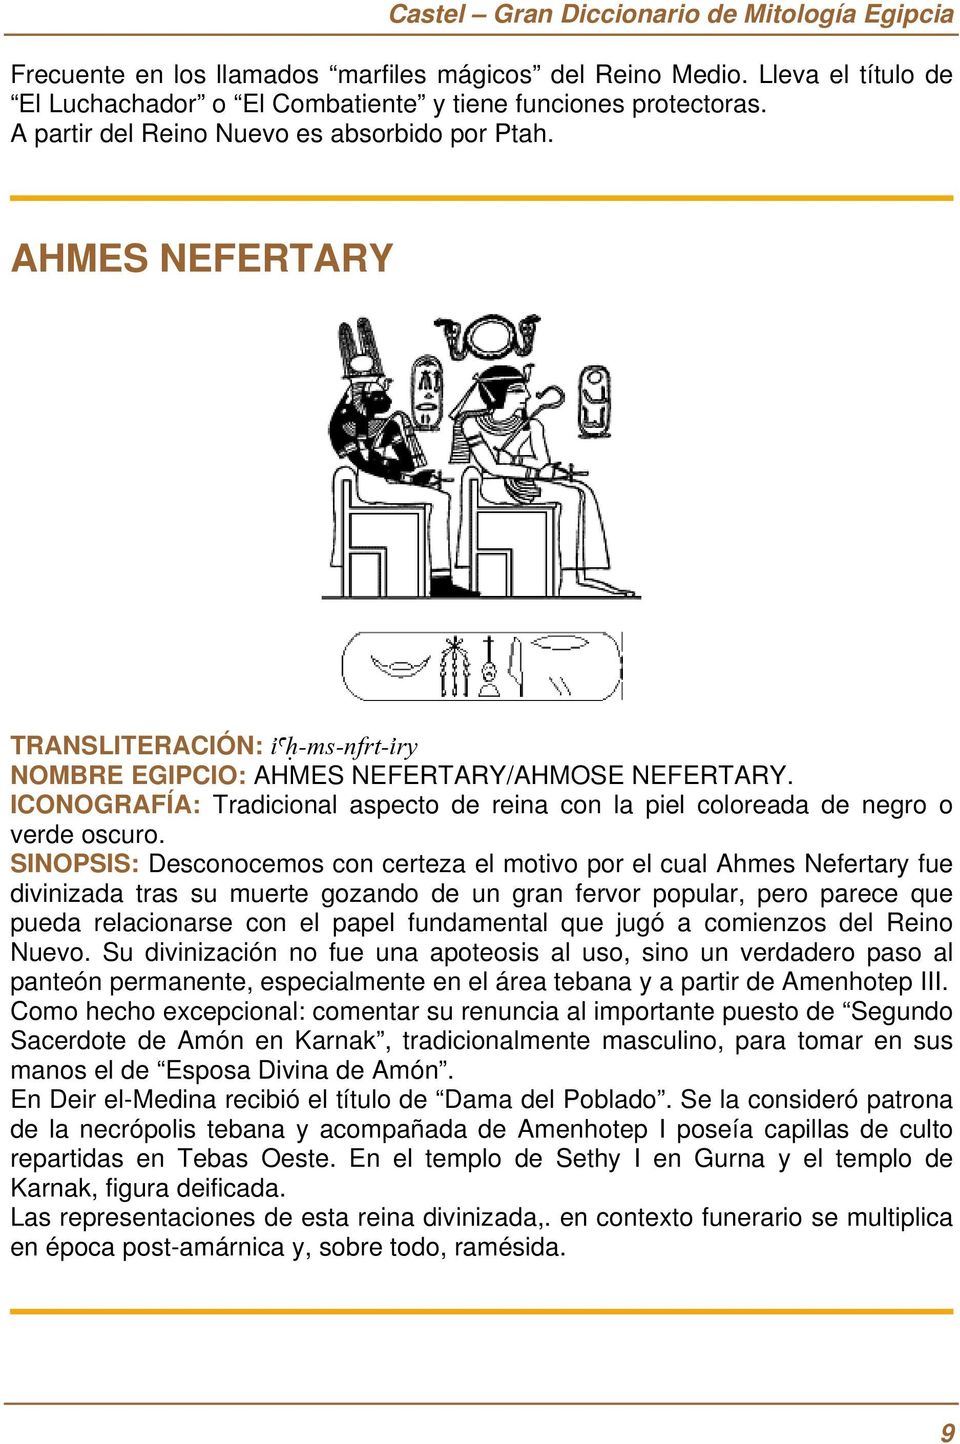 SINOPSIS: Desconocemos con certeza el motivo por el cual Ahmes Nefertary fue divinizada tras su muerte gozando de un gran fervor popular, pero parece que pueda relacionarse con el papel fundamental